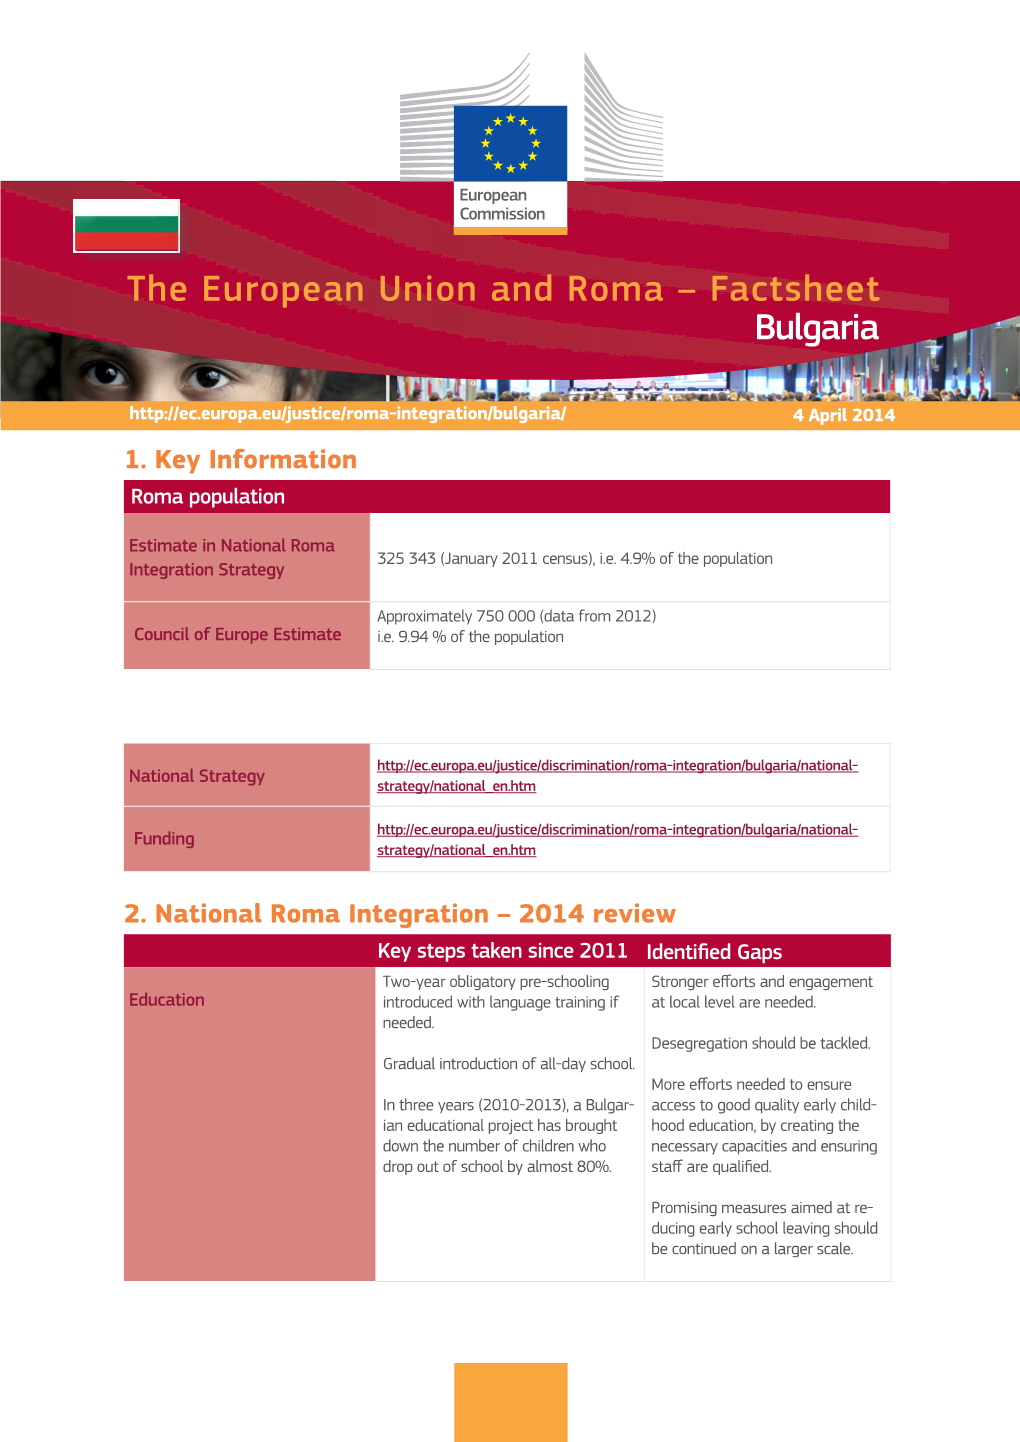 The European Union and Roma – Factsheet Bulgaria